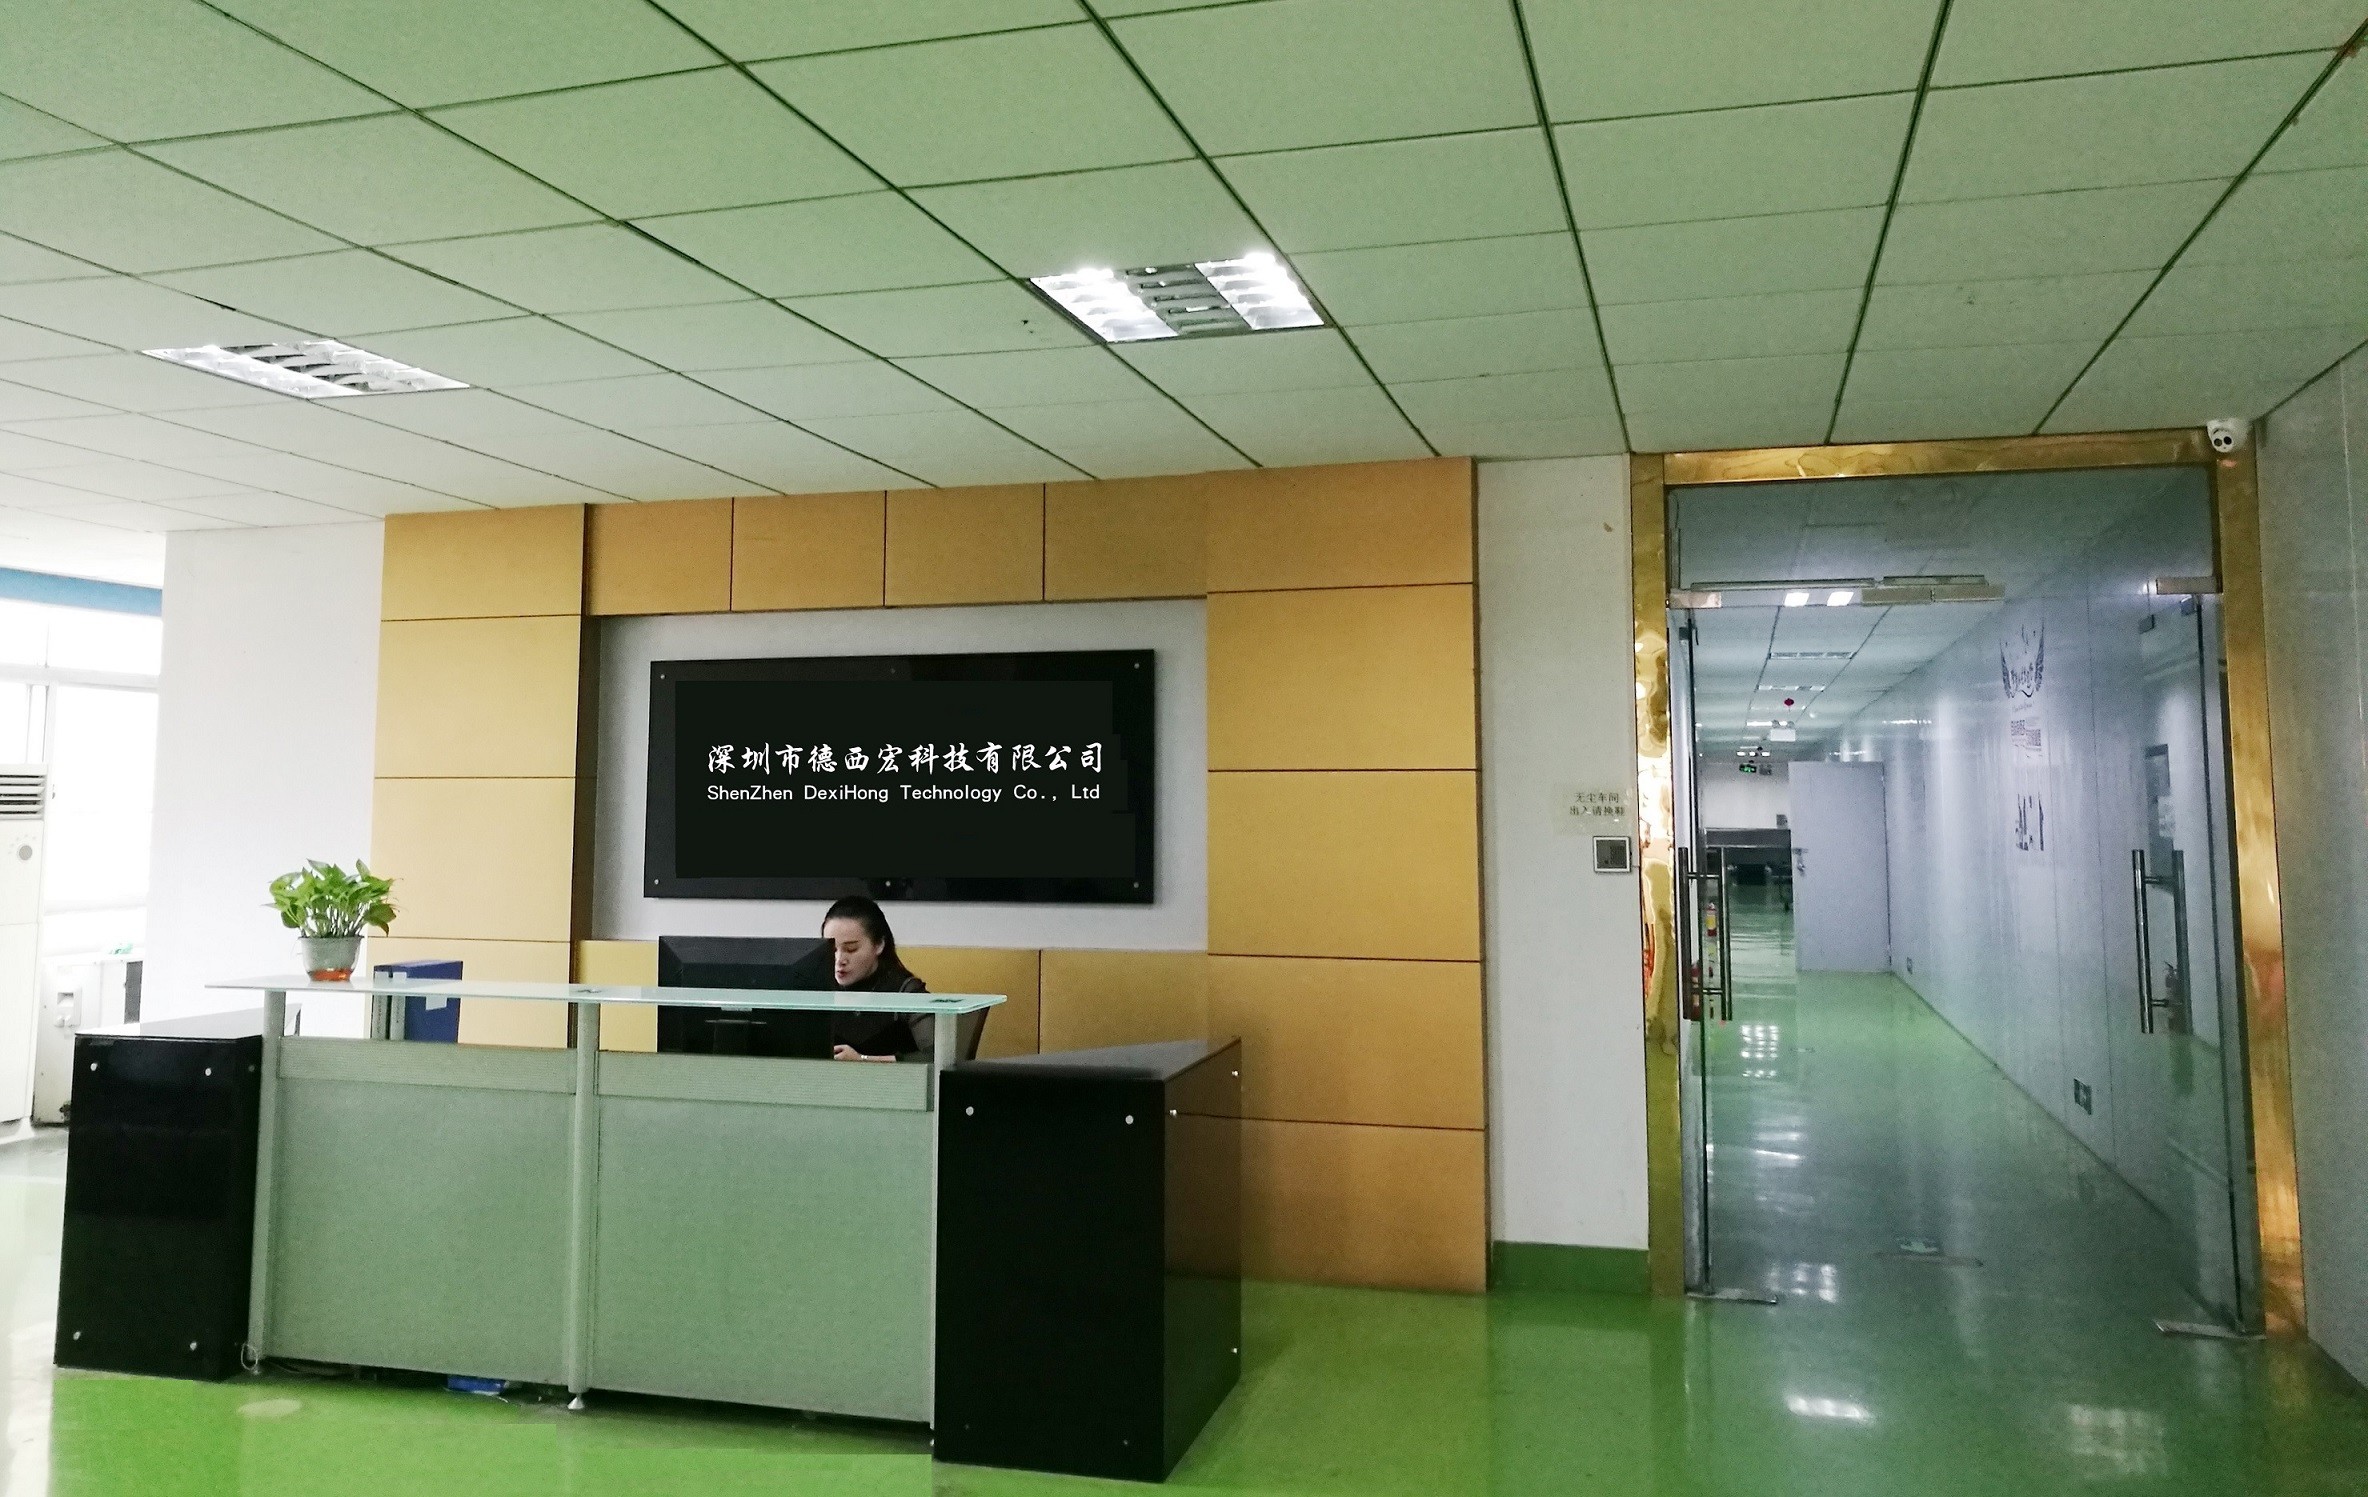 Shenzhen Dexihong Technology Co., Ltd.